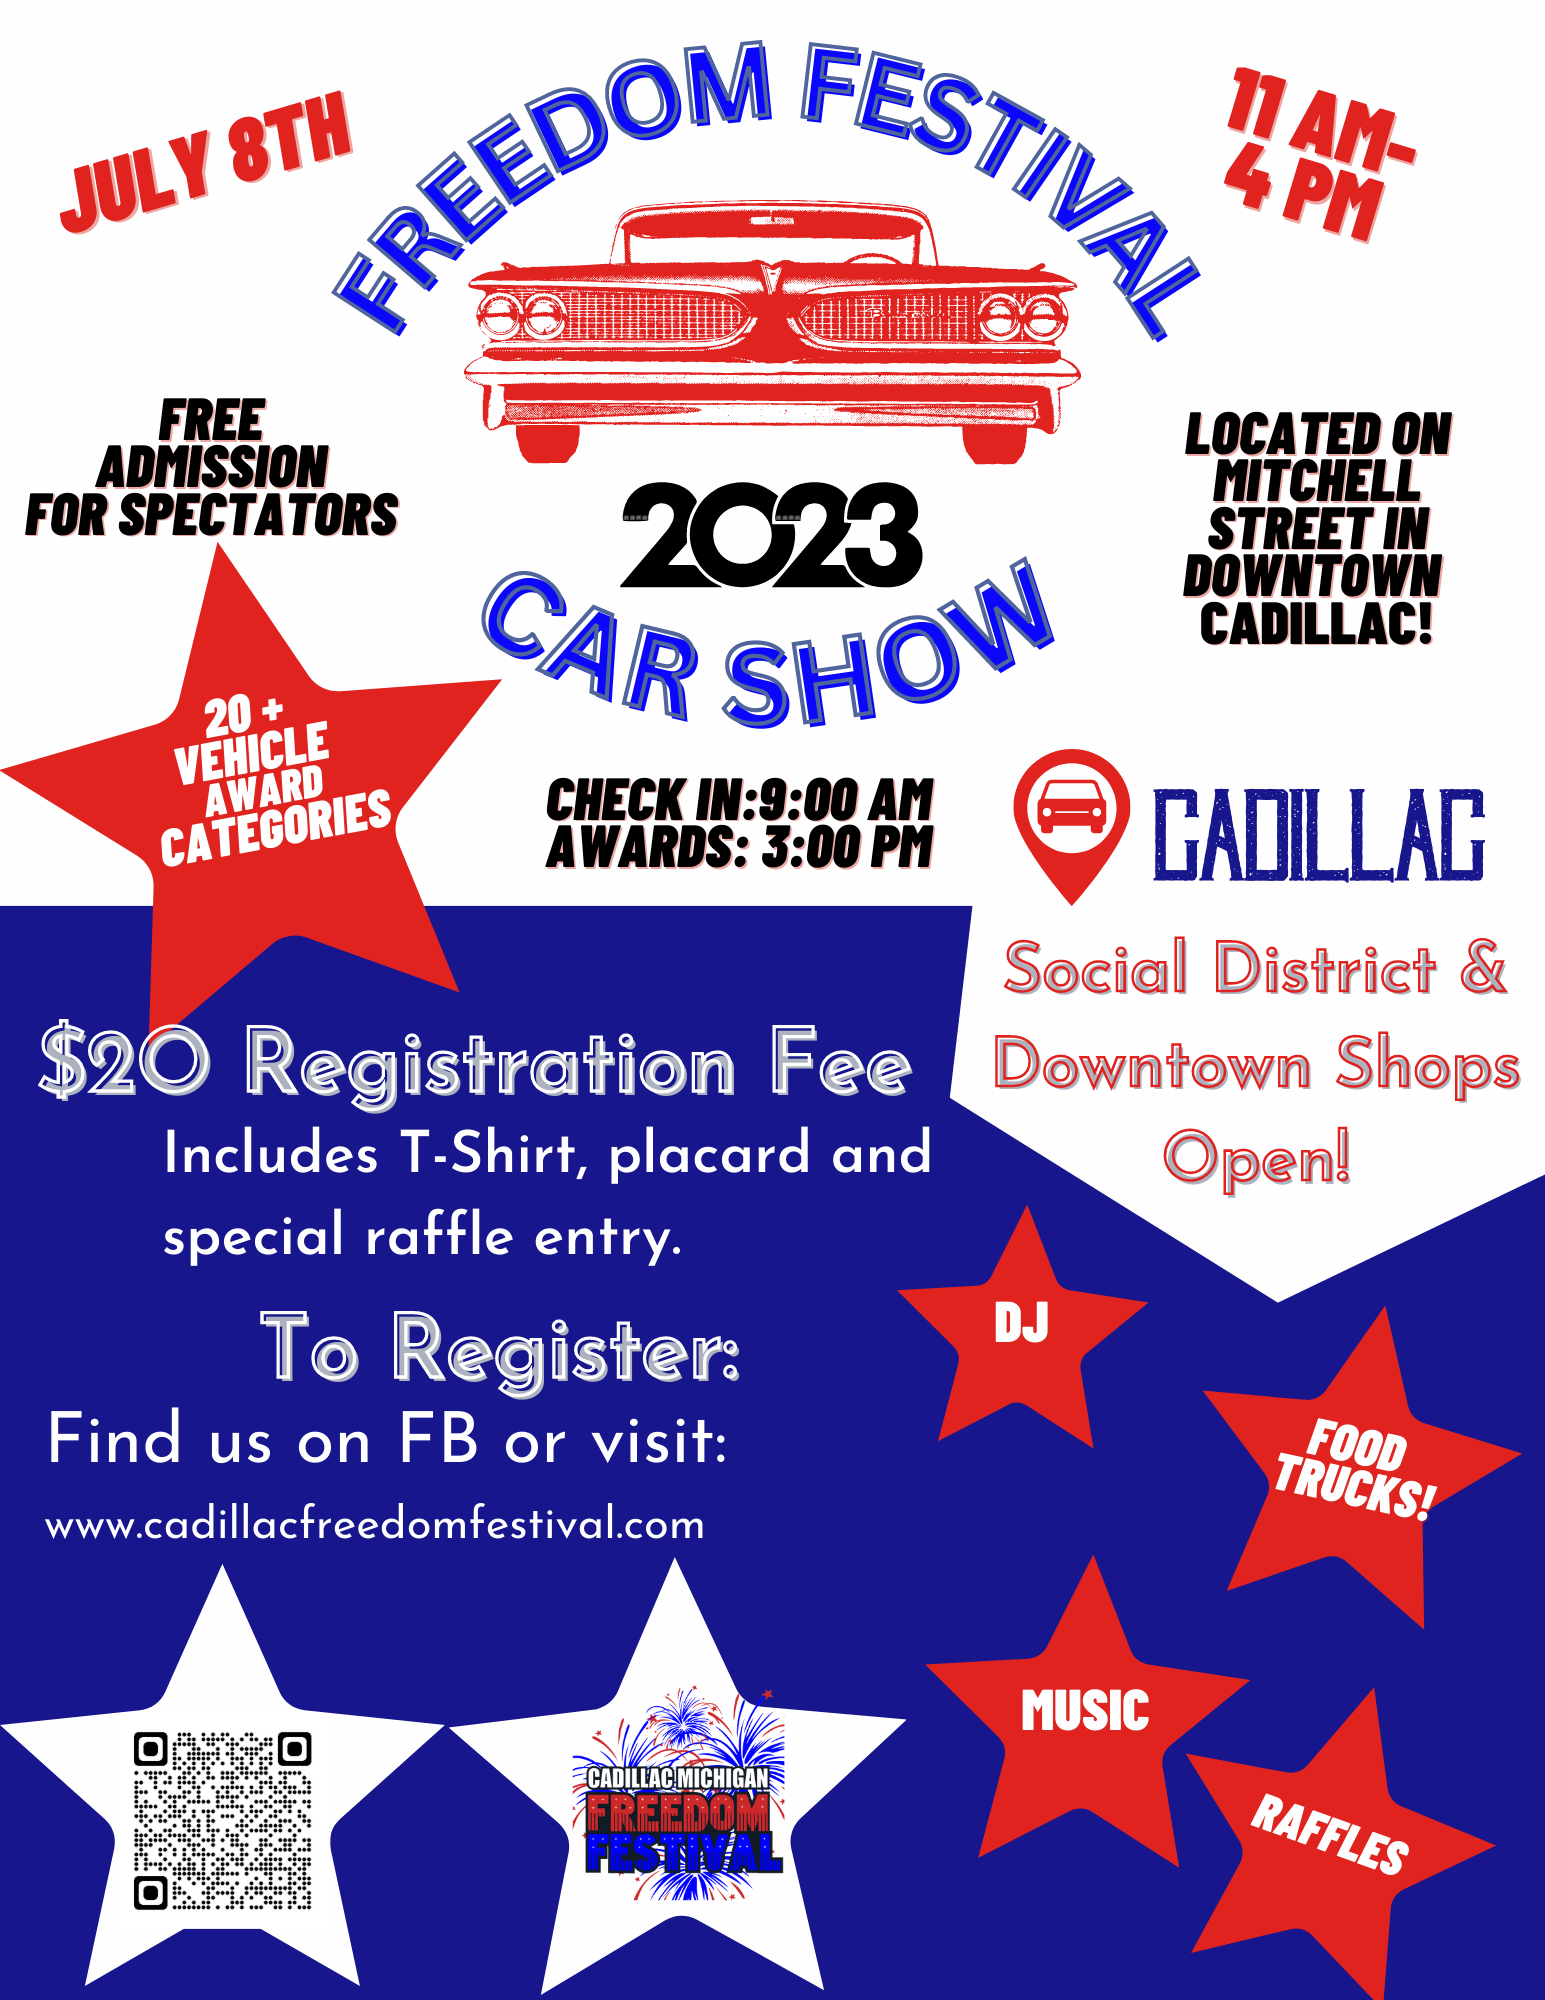 Cadillac Freedom Festival